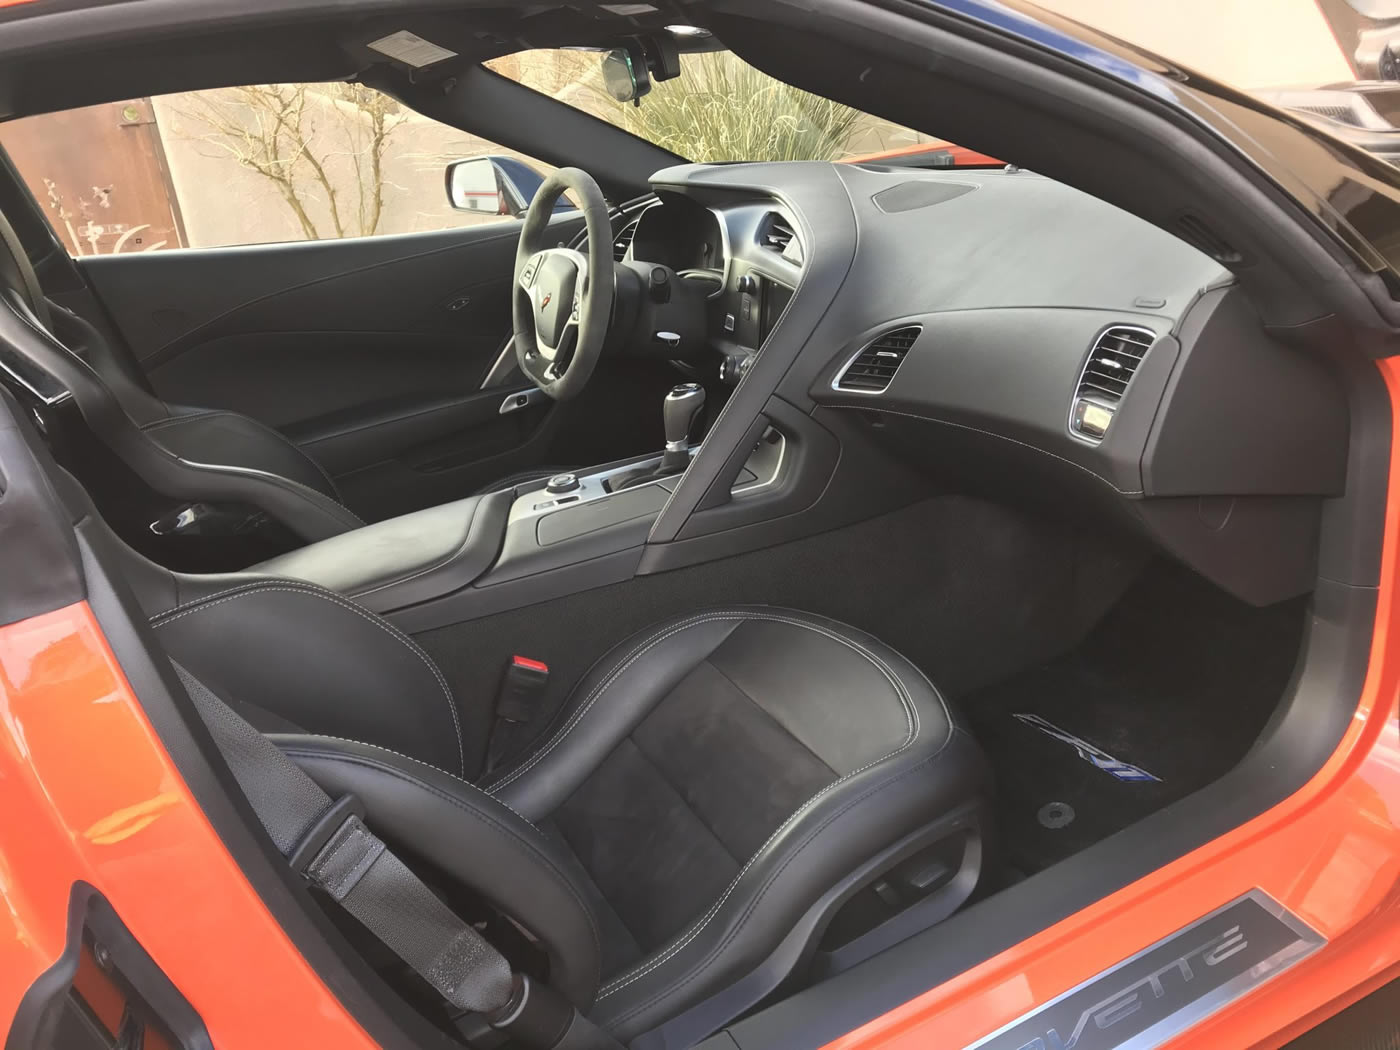 2019 Corvette ZR1 in Sebring Orange Metallic